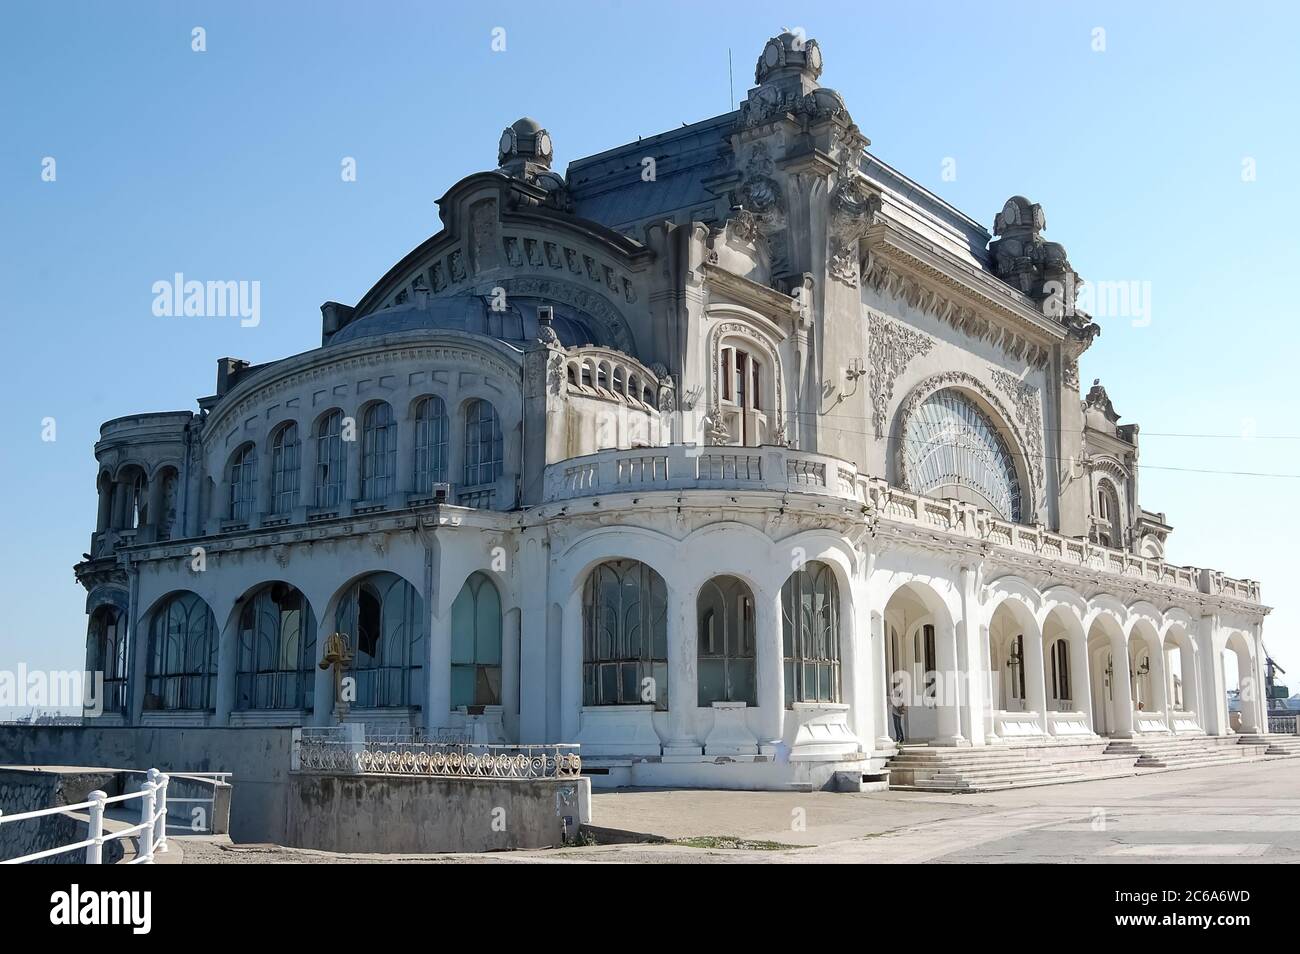 Blick auf das alte Casino an der Promenade in der Stadt Constanta an der Schwarzmeerküste Rumäniens. Stockfoto